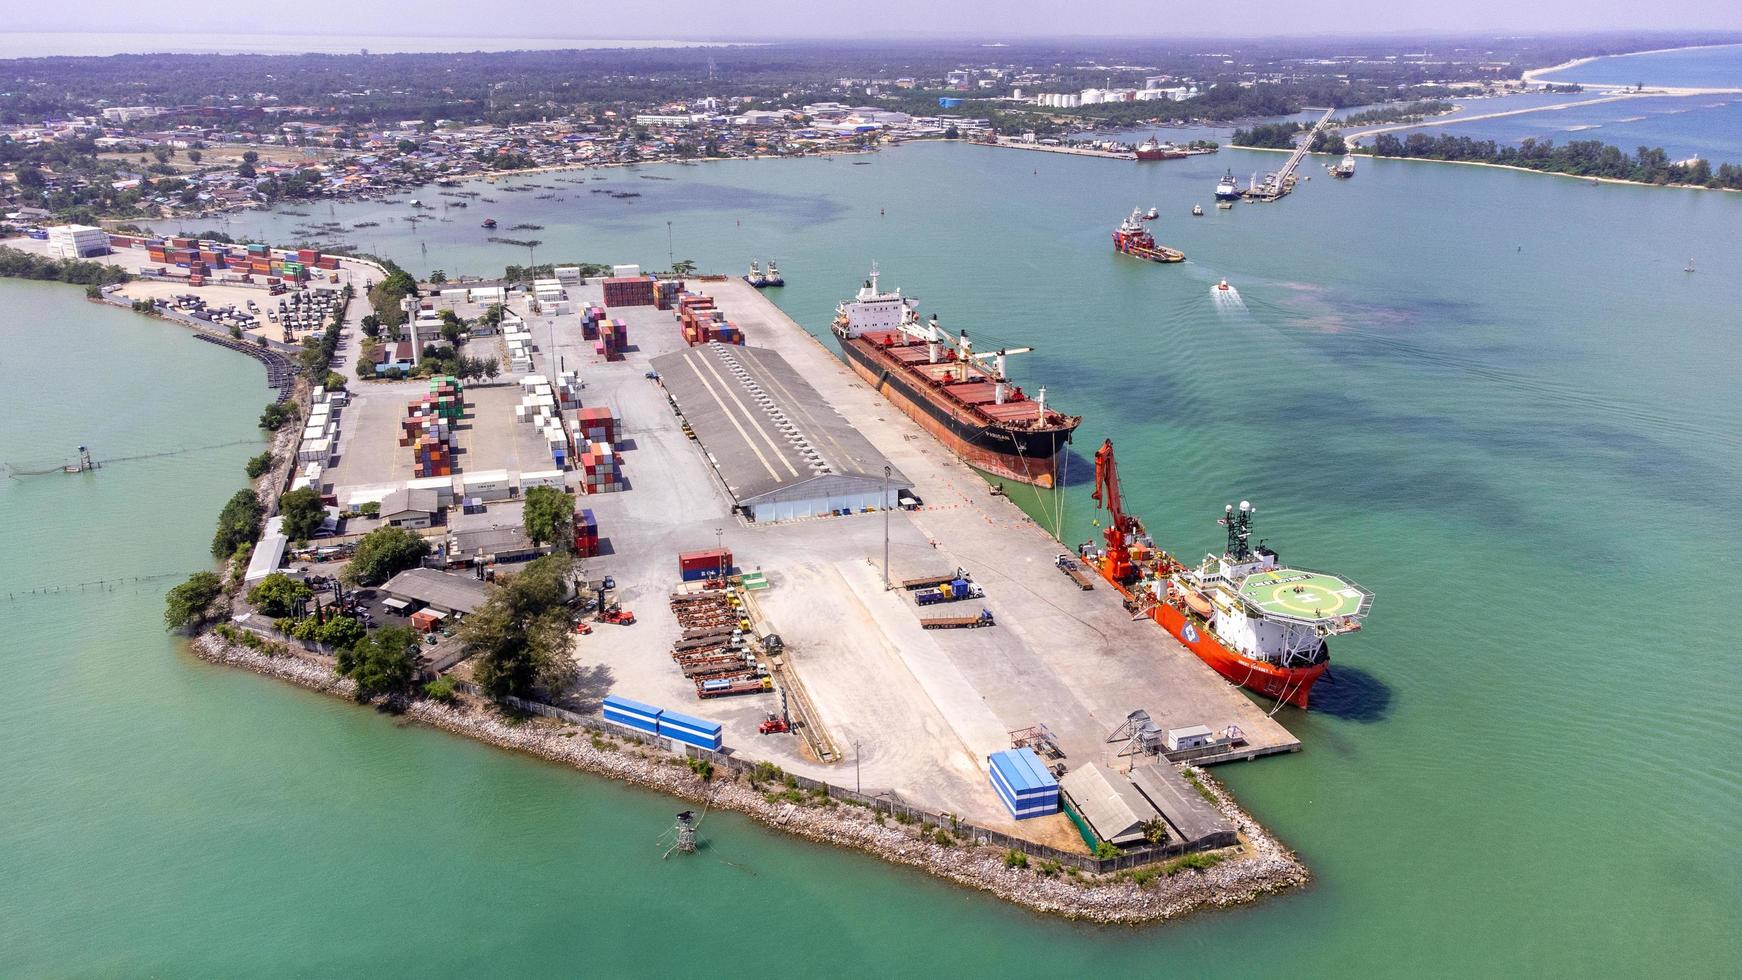 isola di songkhla, tailandia - febbraio 2022 - veduta aerea del trasporto commerciale di spedizioni industriali e container per navi da carico. situato su una penisola che separa l'estuario. foto